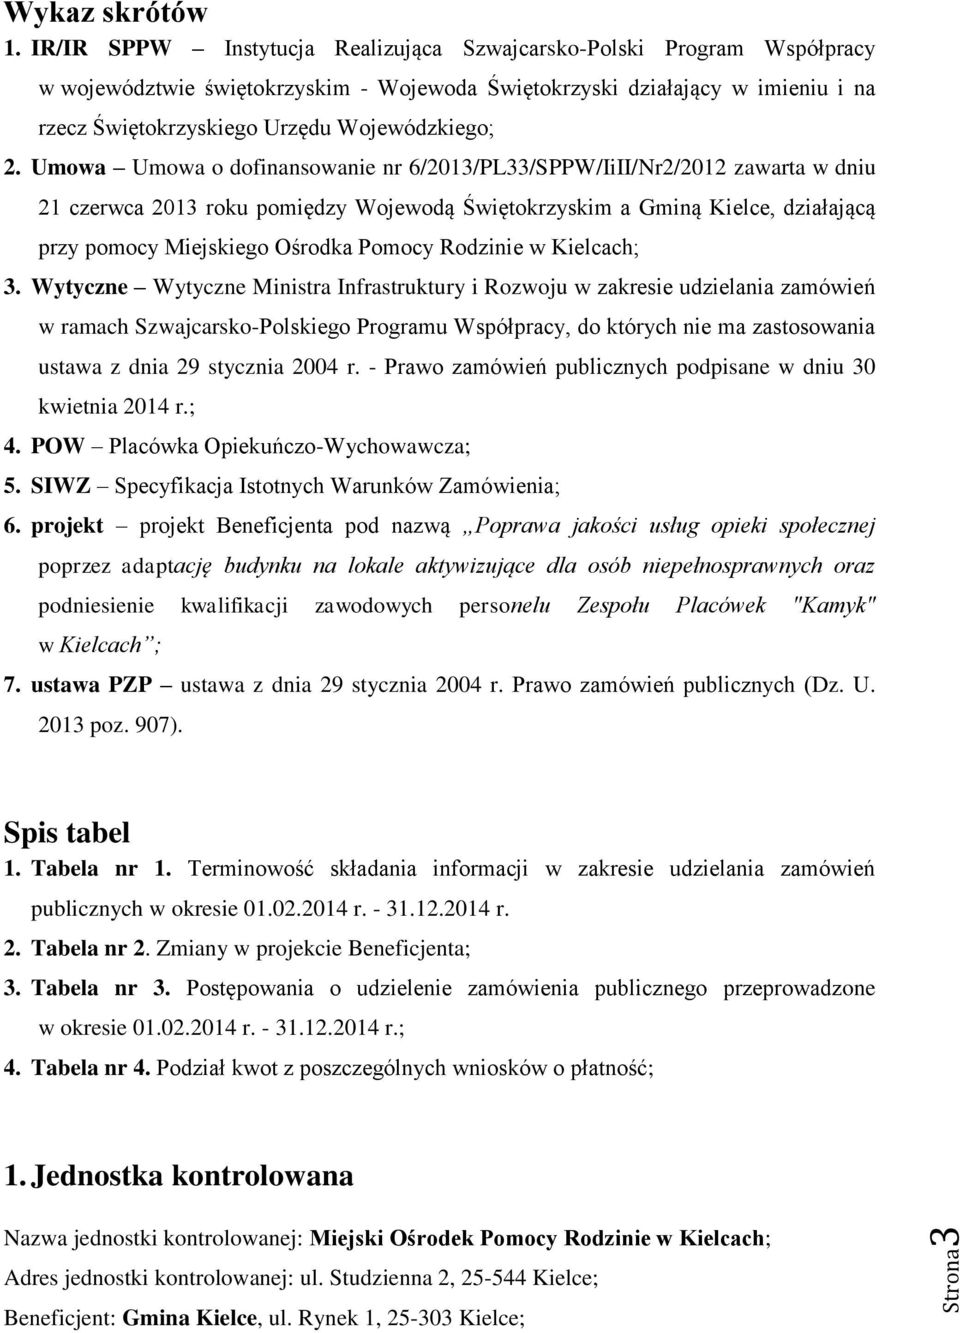 Umowa Umowa o dofinansowanie nr 6/2013/PL33/SPPW/IiII/Nr2/2012 zawarta w dniu 21 czerwca 2013 roku pomiędzy Wojewodą Świętokrzyskim a Gminą Kielce, działającą przy pomocy Miejskiego Ośrodka Pomocy